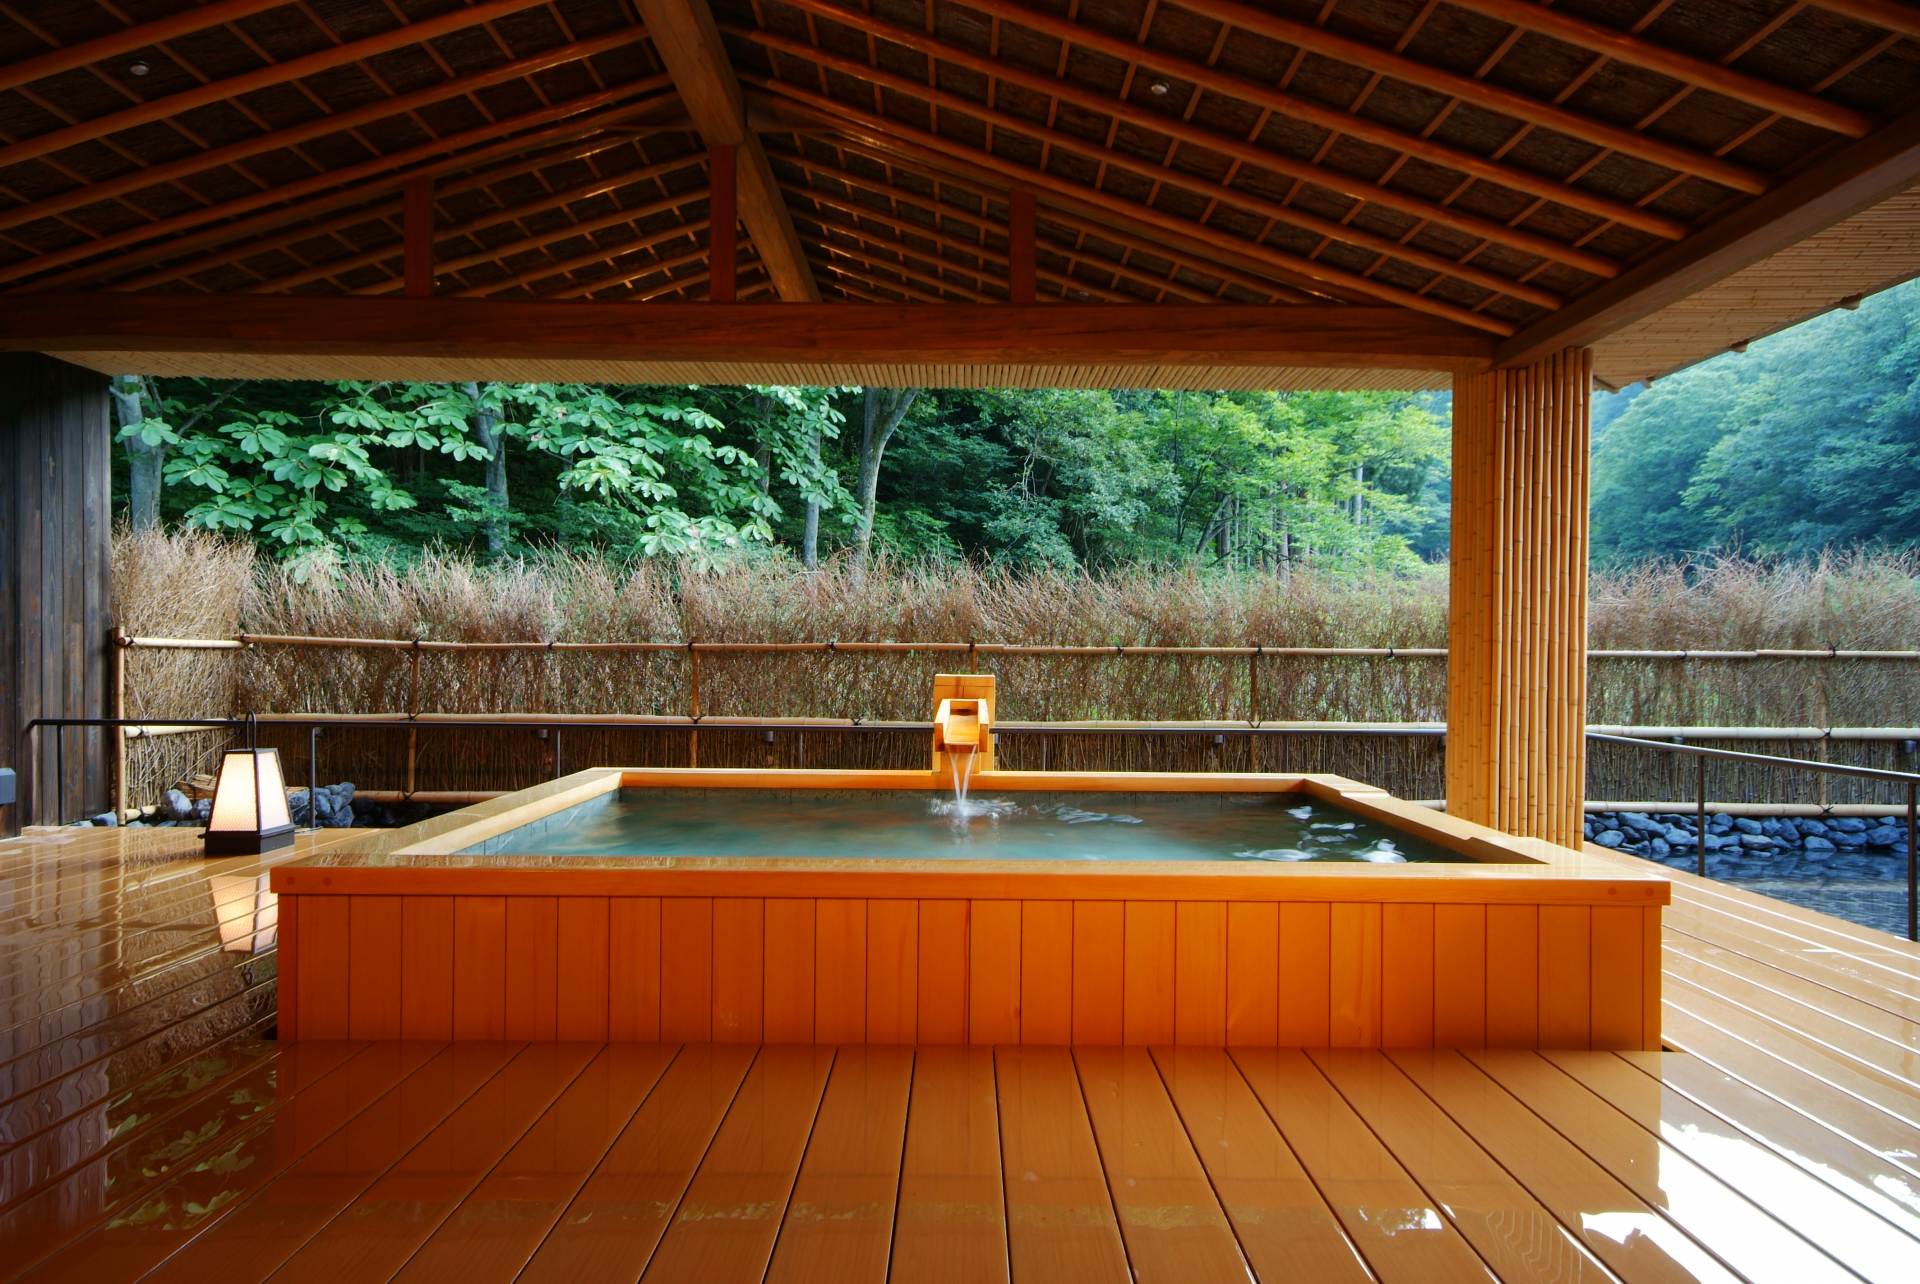 El spa privado de alquiler es popular. Una habitación cuesta 8800 yenes (impuestos incluidos) durante 70 minutos para hasta 4 personas.